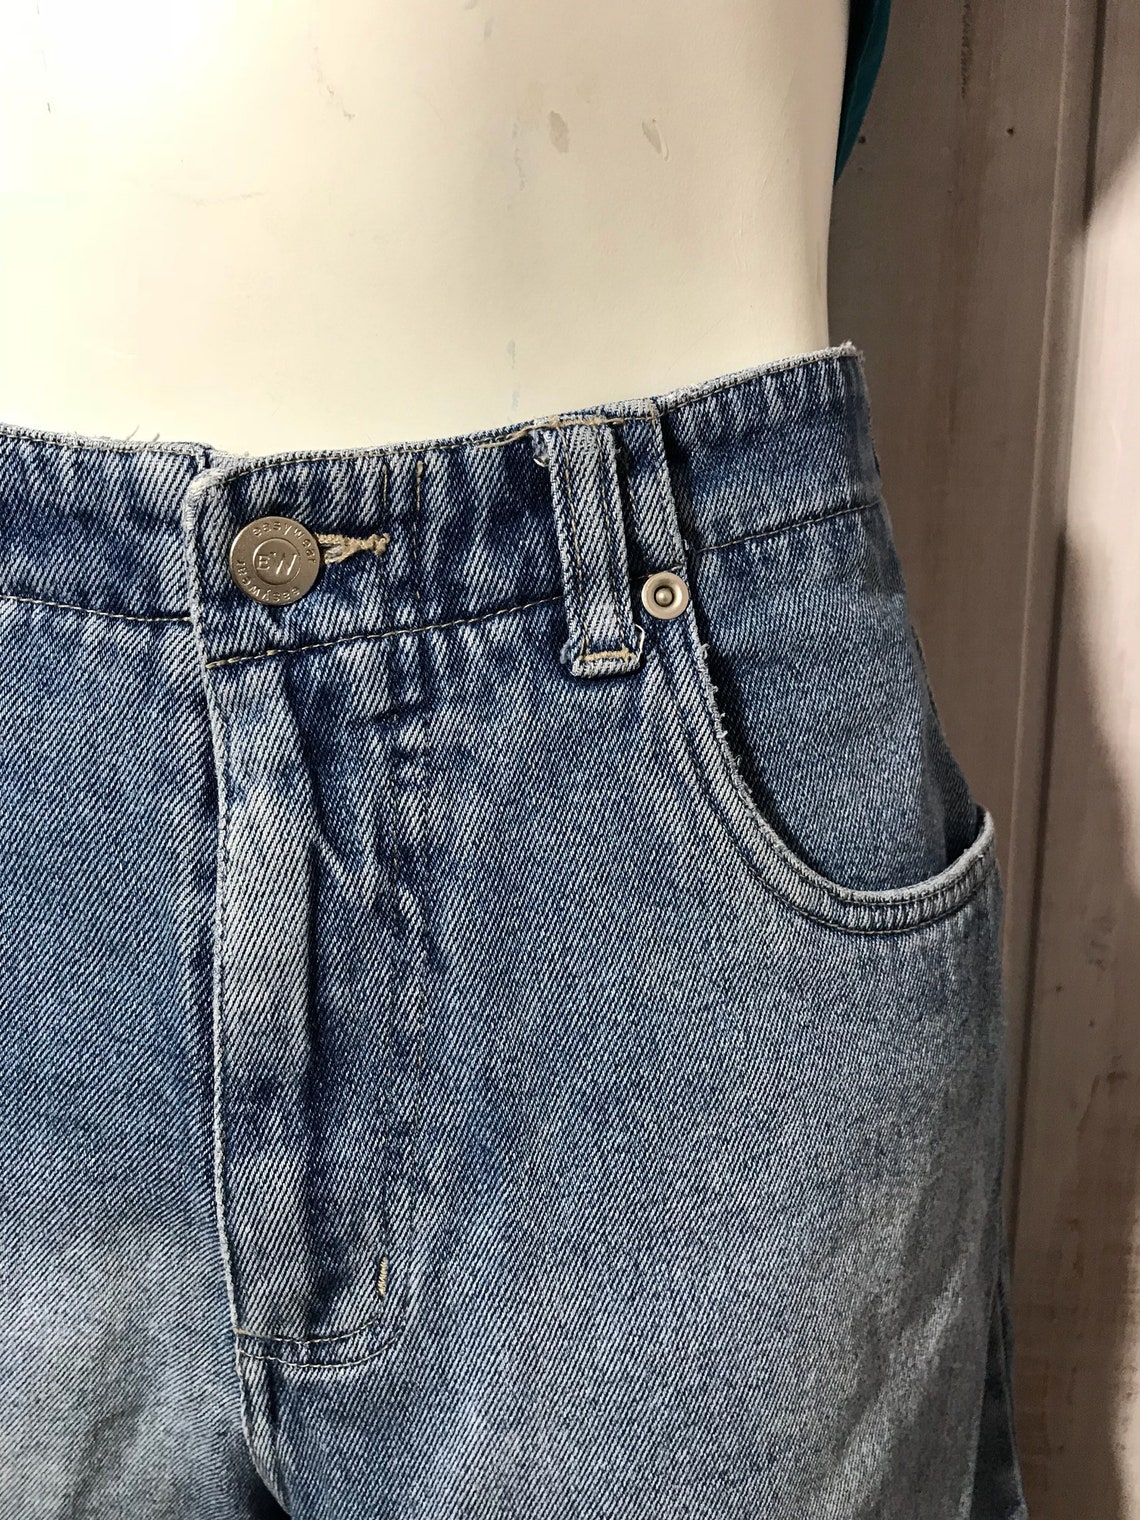 Vintage women's jeans faded jeans Easy Wear high | Etsy